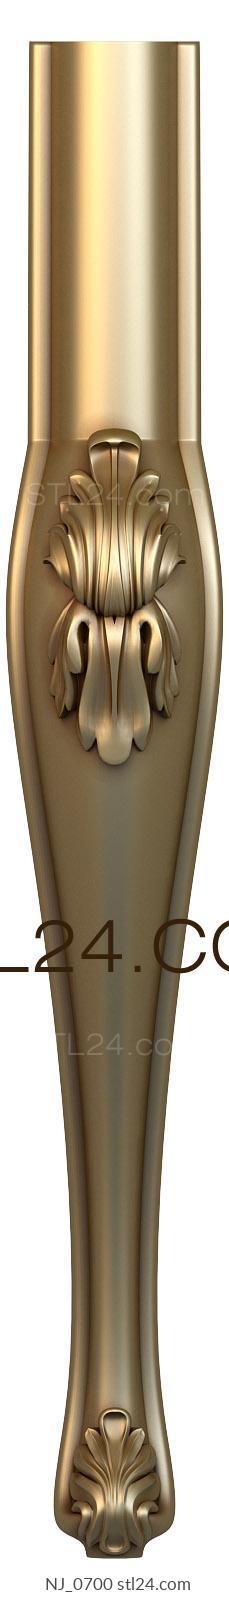 Ножки (NJ_0700) 3D модель для ЧПУ станка